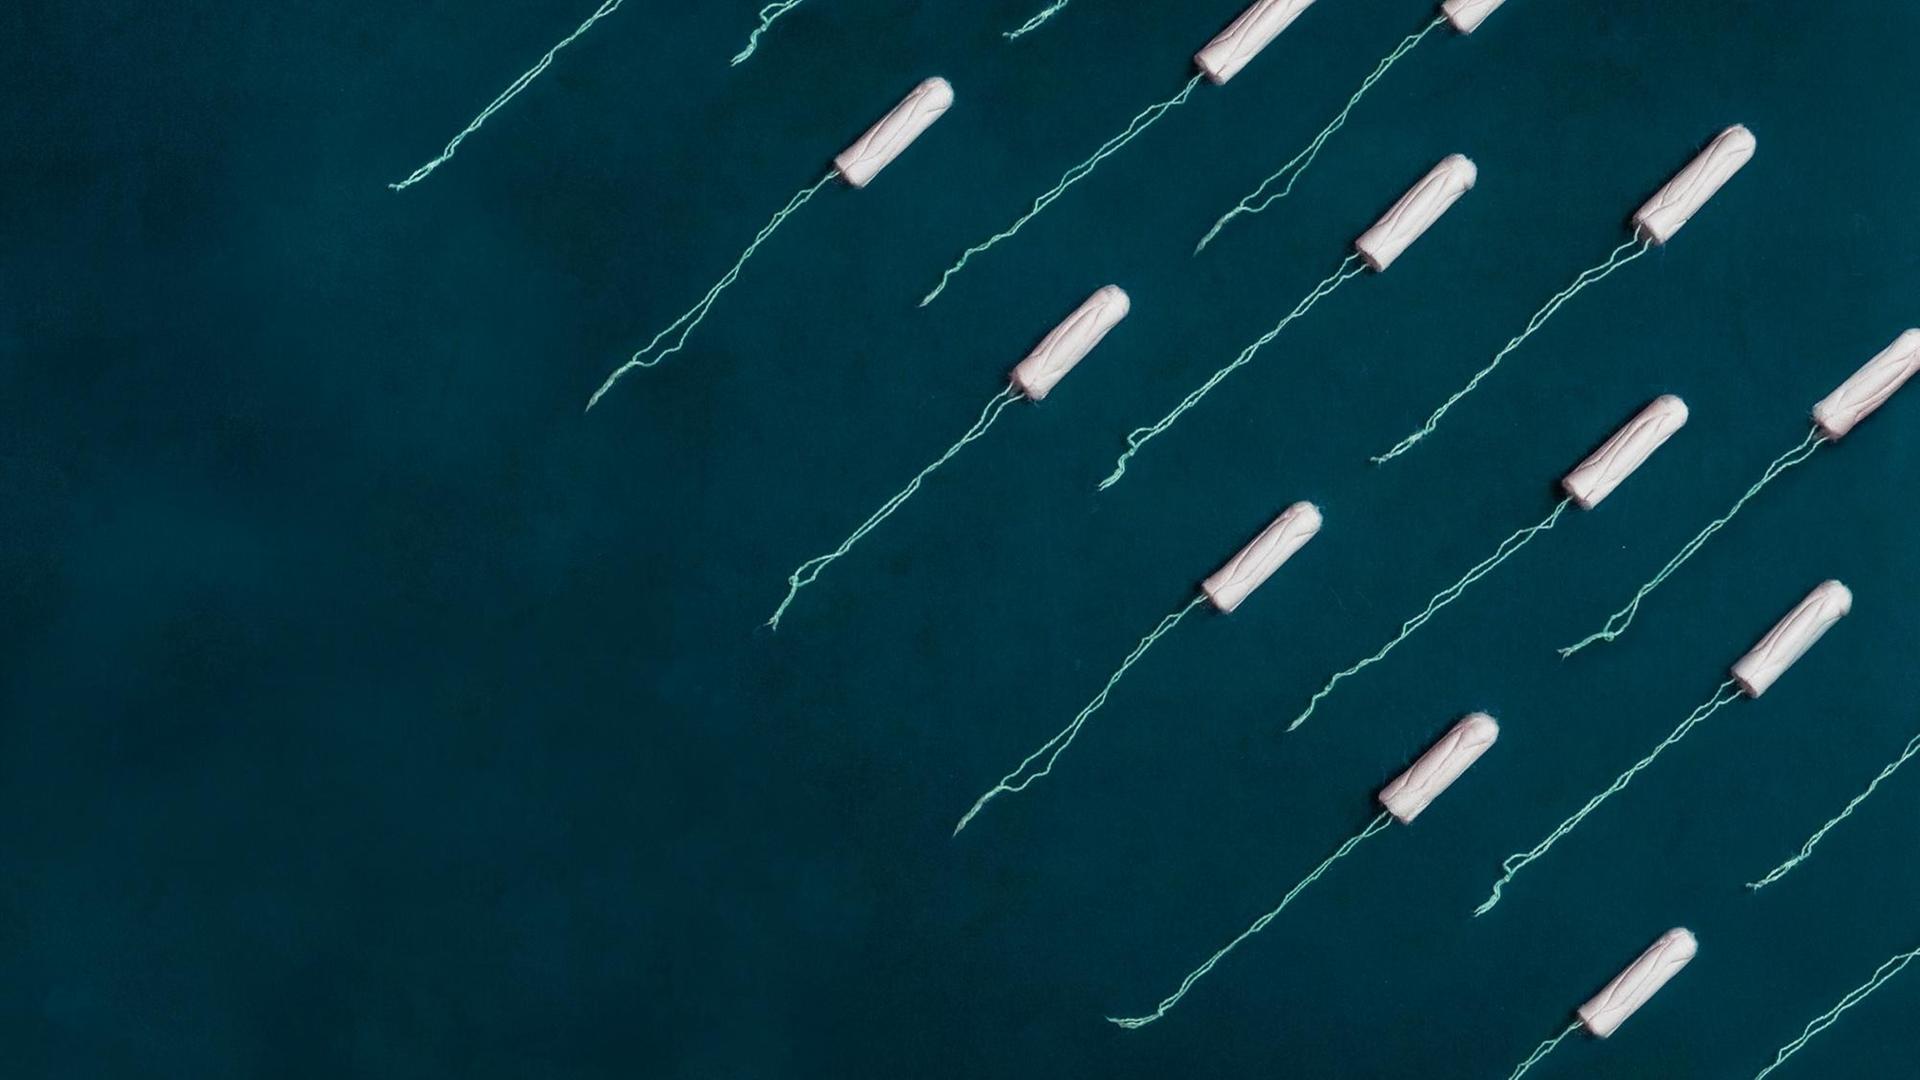 Illustration von vielen Tampons, die wie ein Schwarm Fische oder Spermien in eine Richtung zeigen.